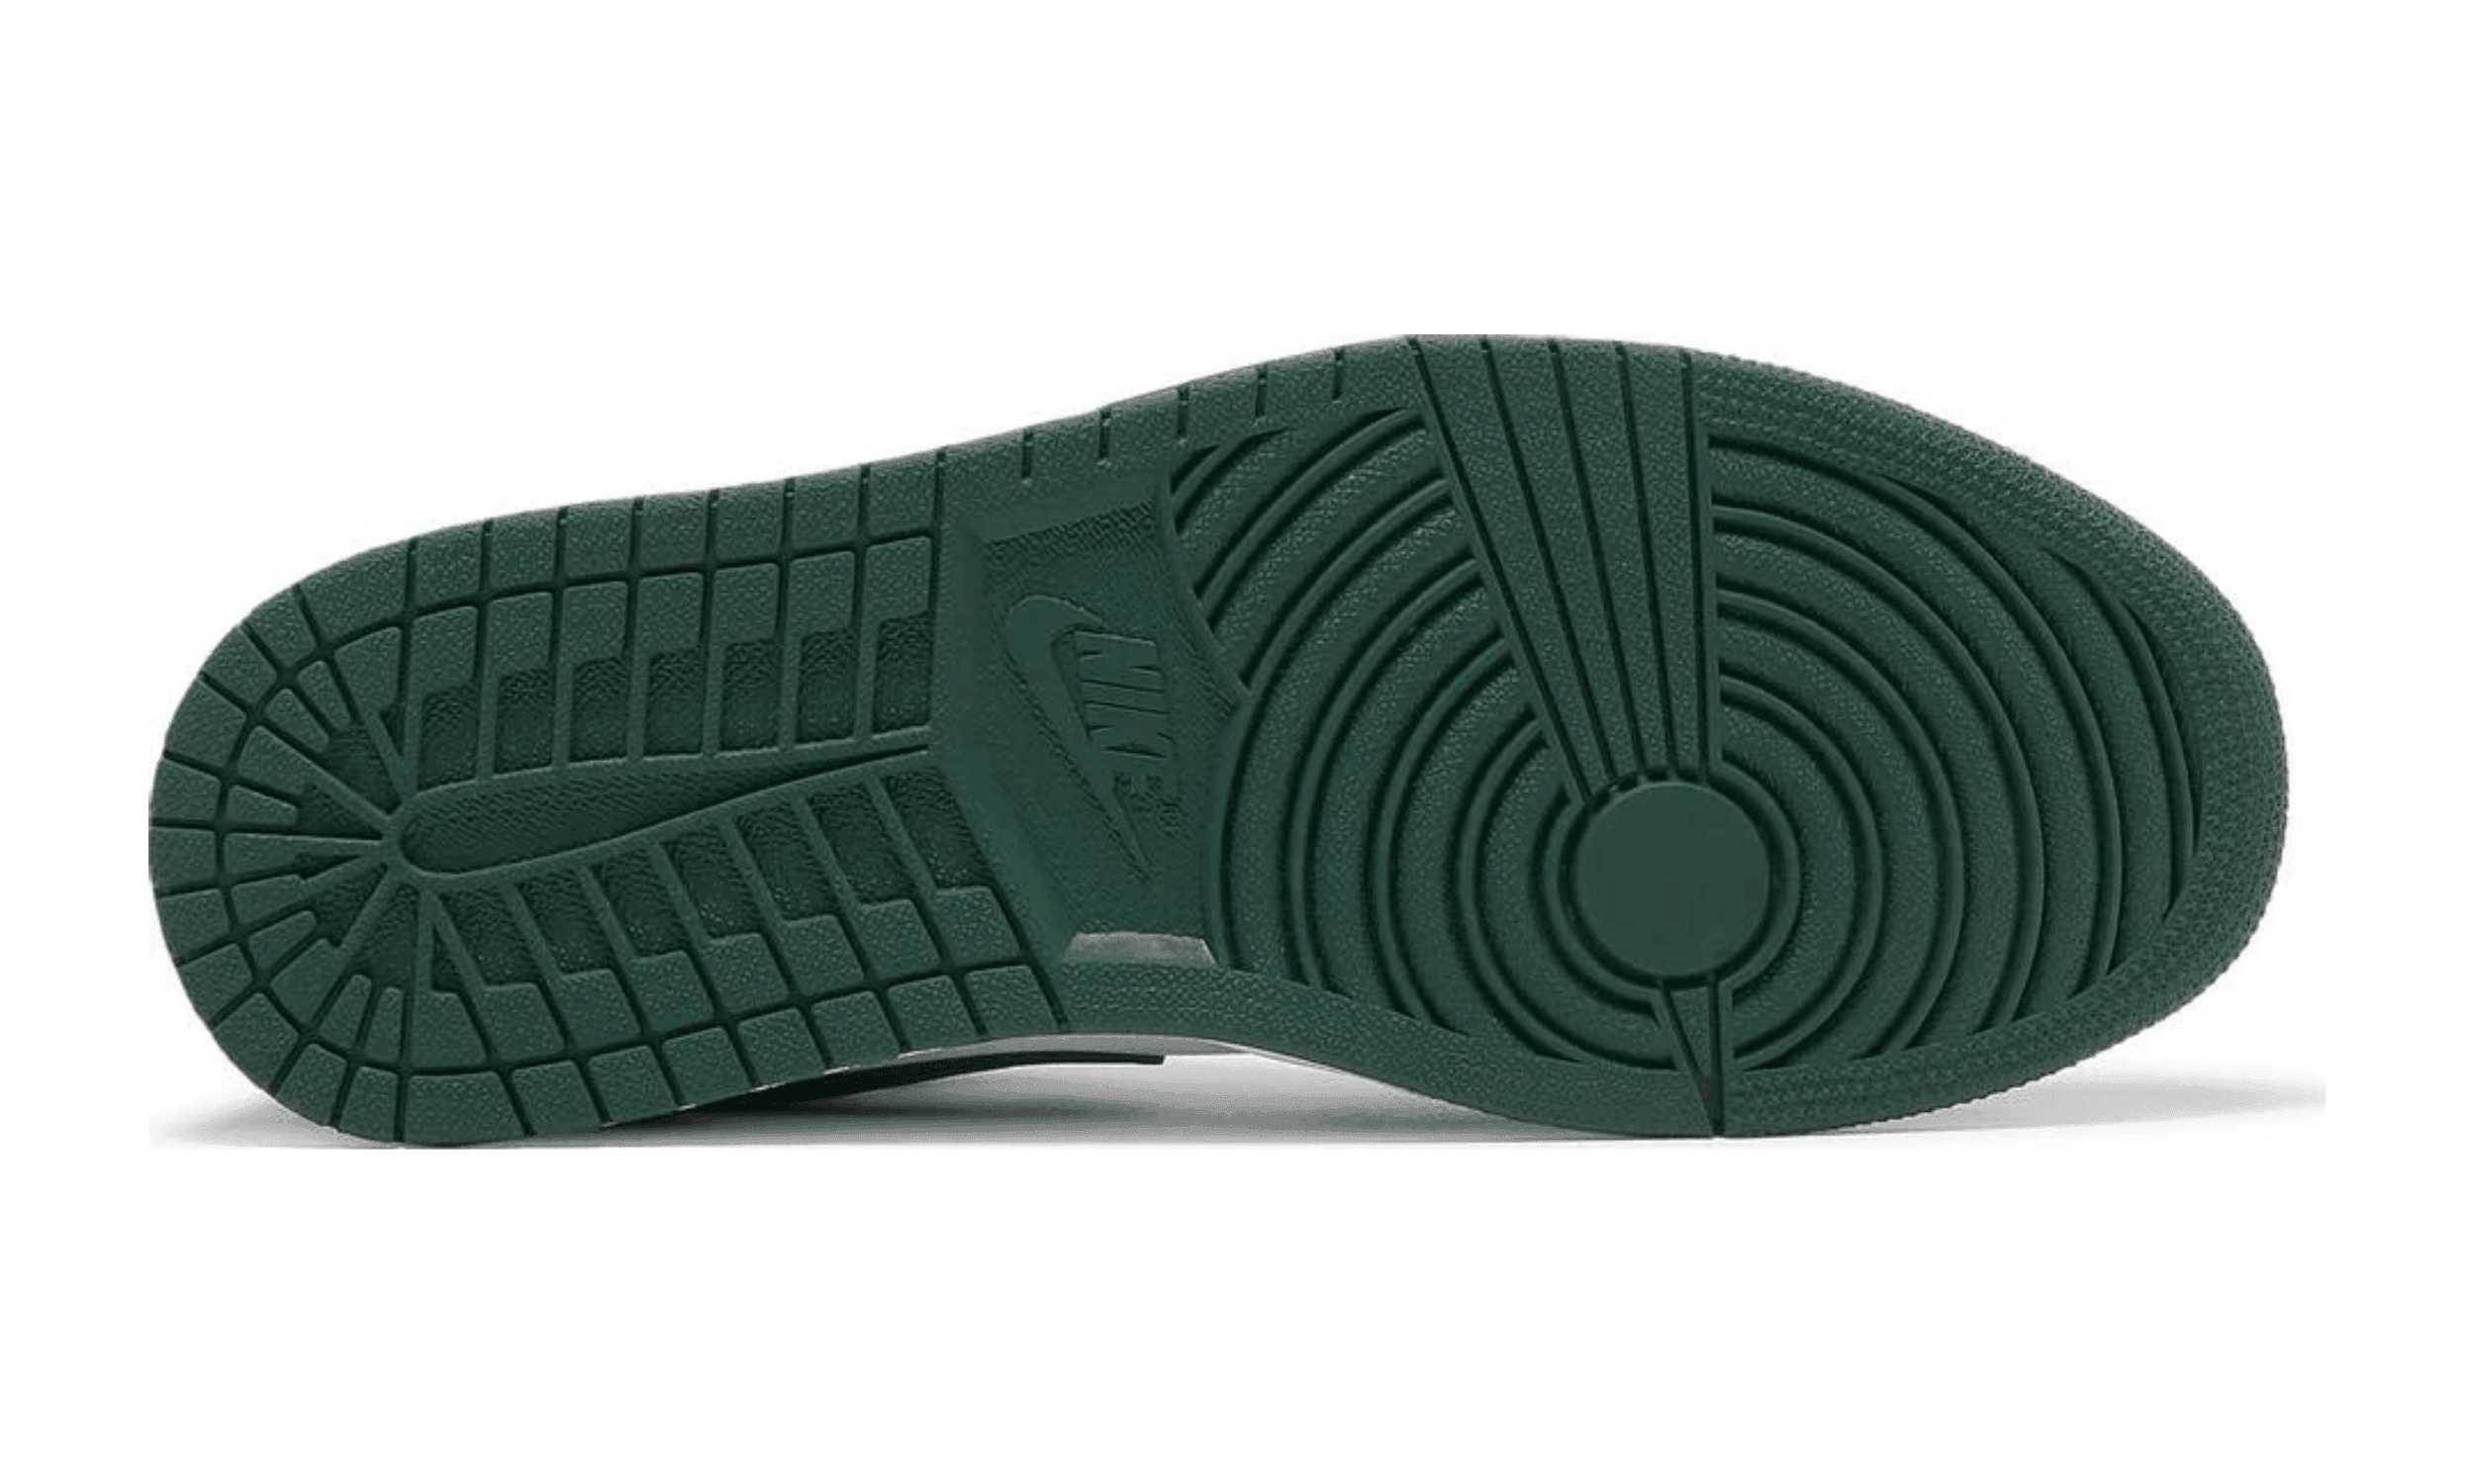 Air Jordan 1 Low Green Toe - Kicksite-553558-371